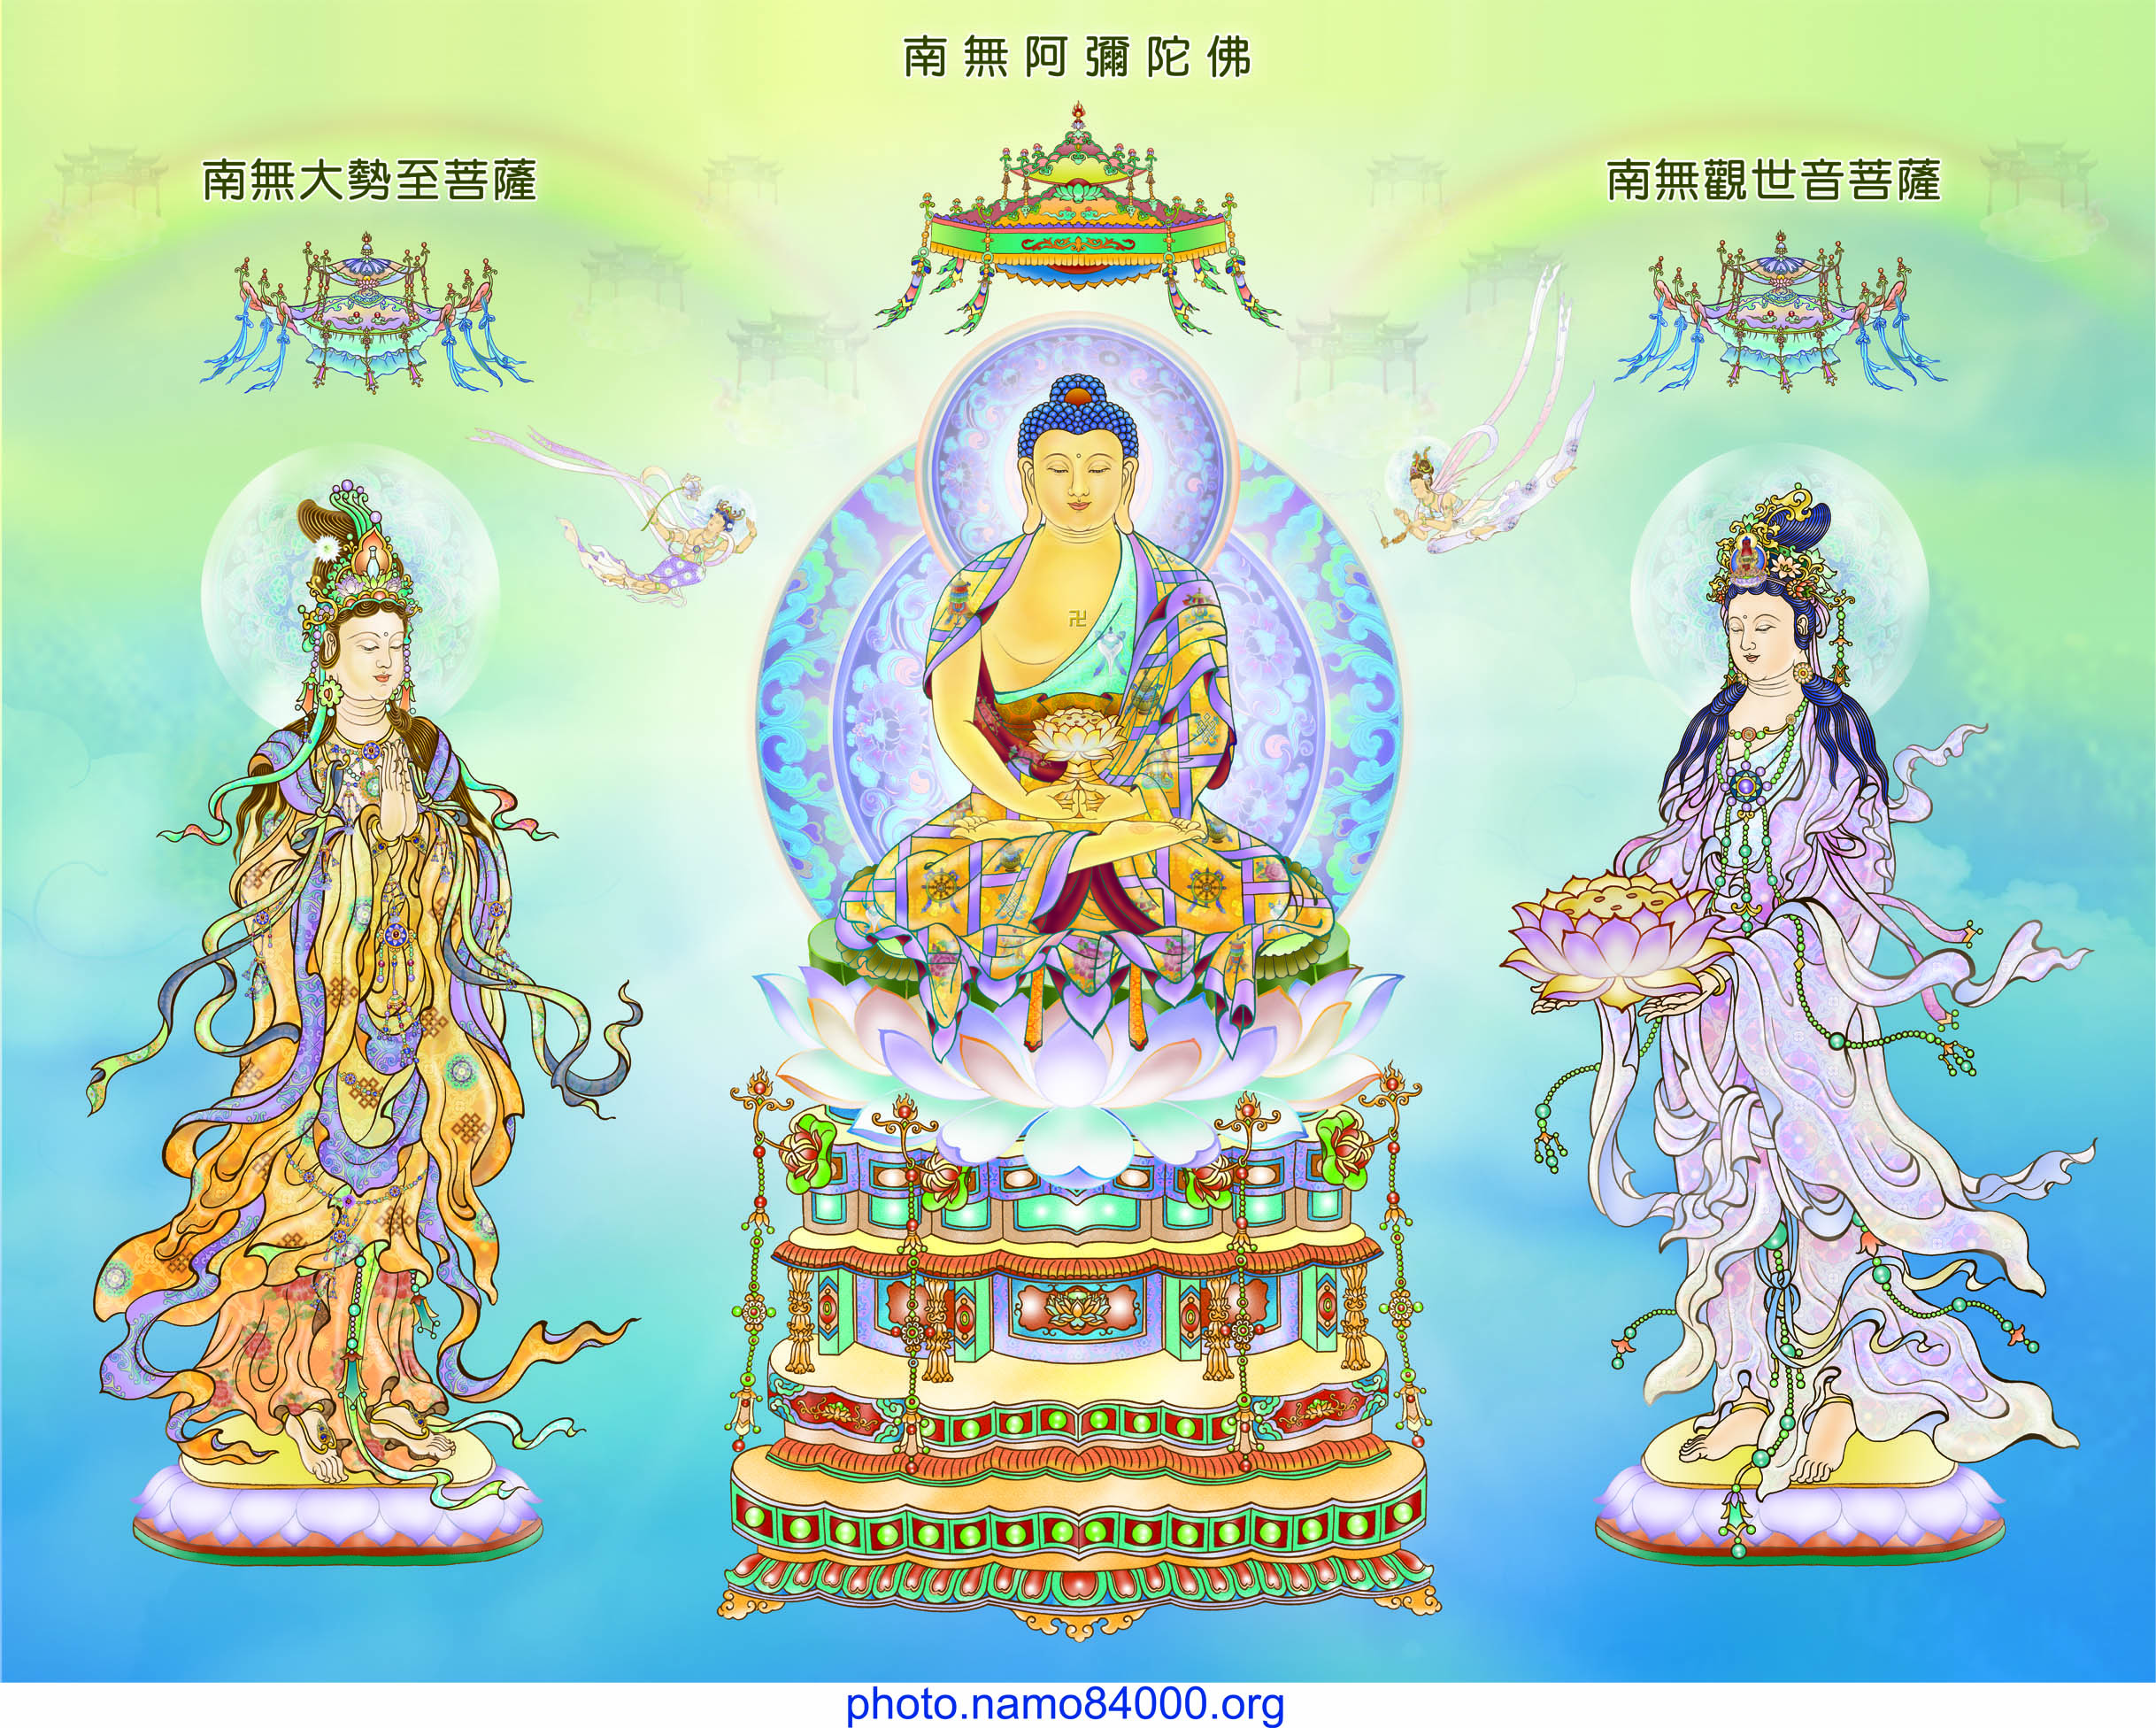 Tải xuống file ảnh định dạng TIFF Đức Phật A Di Đà và thế giới Tây Phương Cực Lạc | Download TIFF files of Amitabha Buddha and Great Bodhisattvas leading to the Western Land of Ultimate Bliss